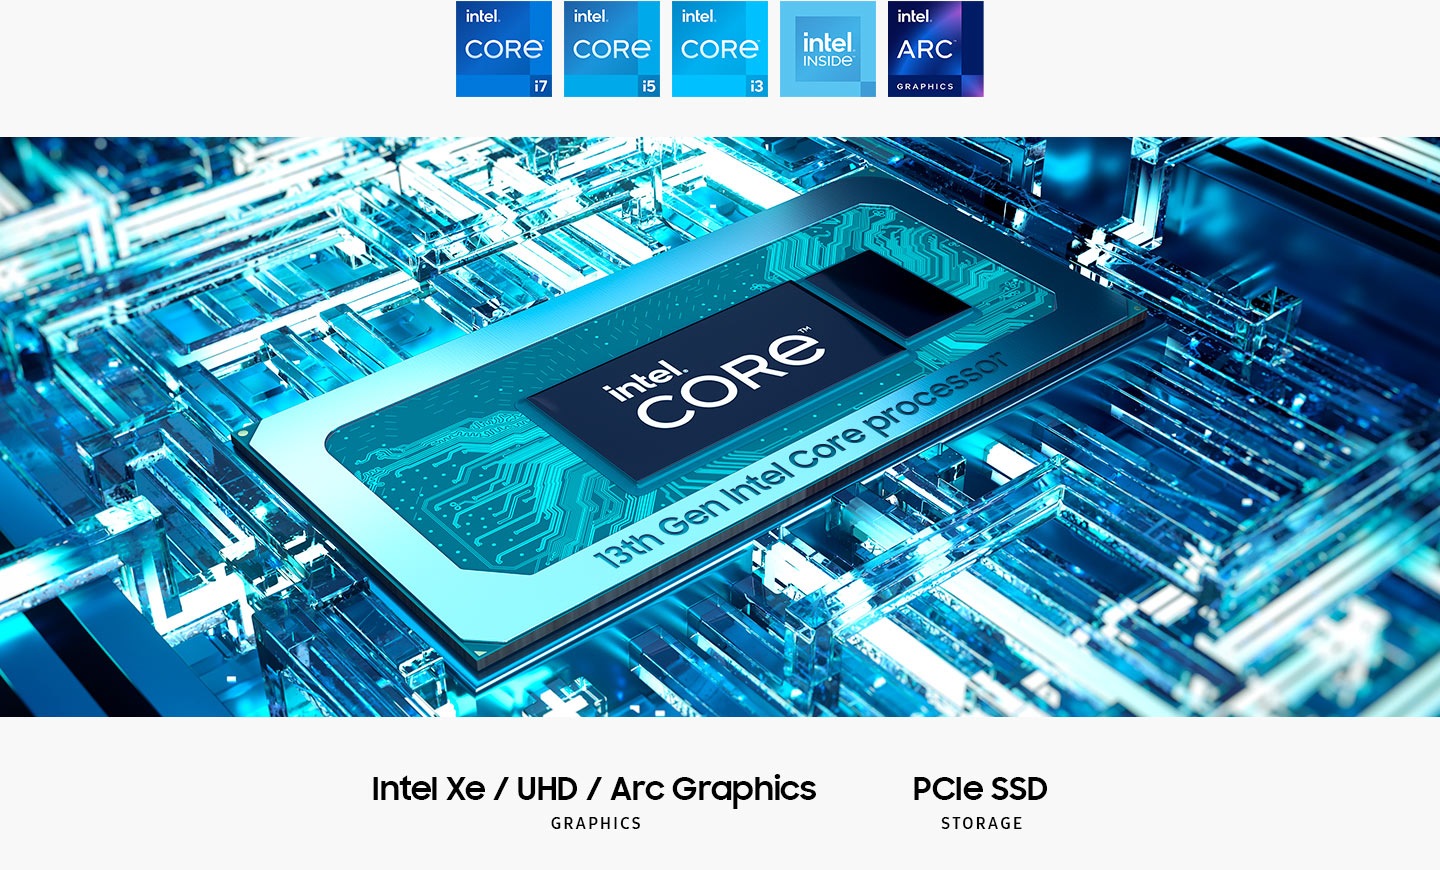 第13代Intel®Core™處理器在主板上，中間帶有Intel®Core™文本。英特爾XE / UHD / ARC圖形。 PCIE SSD存儲。顯示了Intel Core i7徽標，Intel Core i5，Intel Core i3，Inter Inside和Intel Arc圖形。